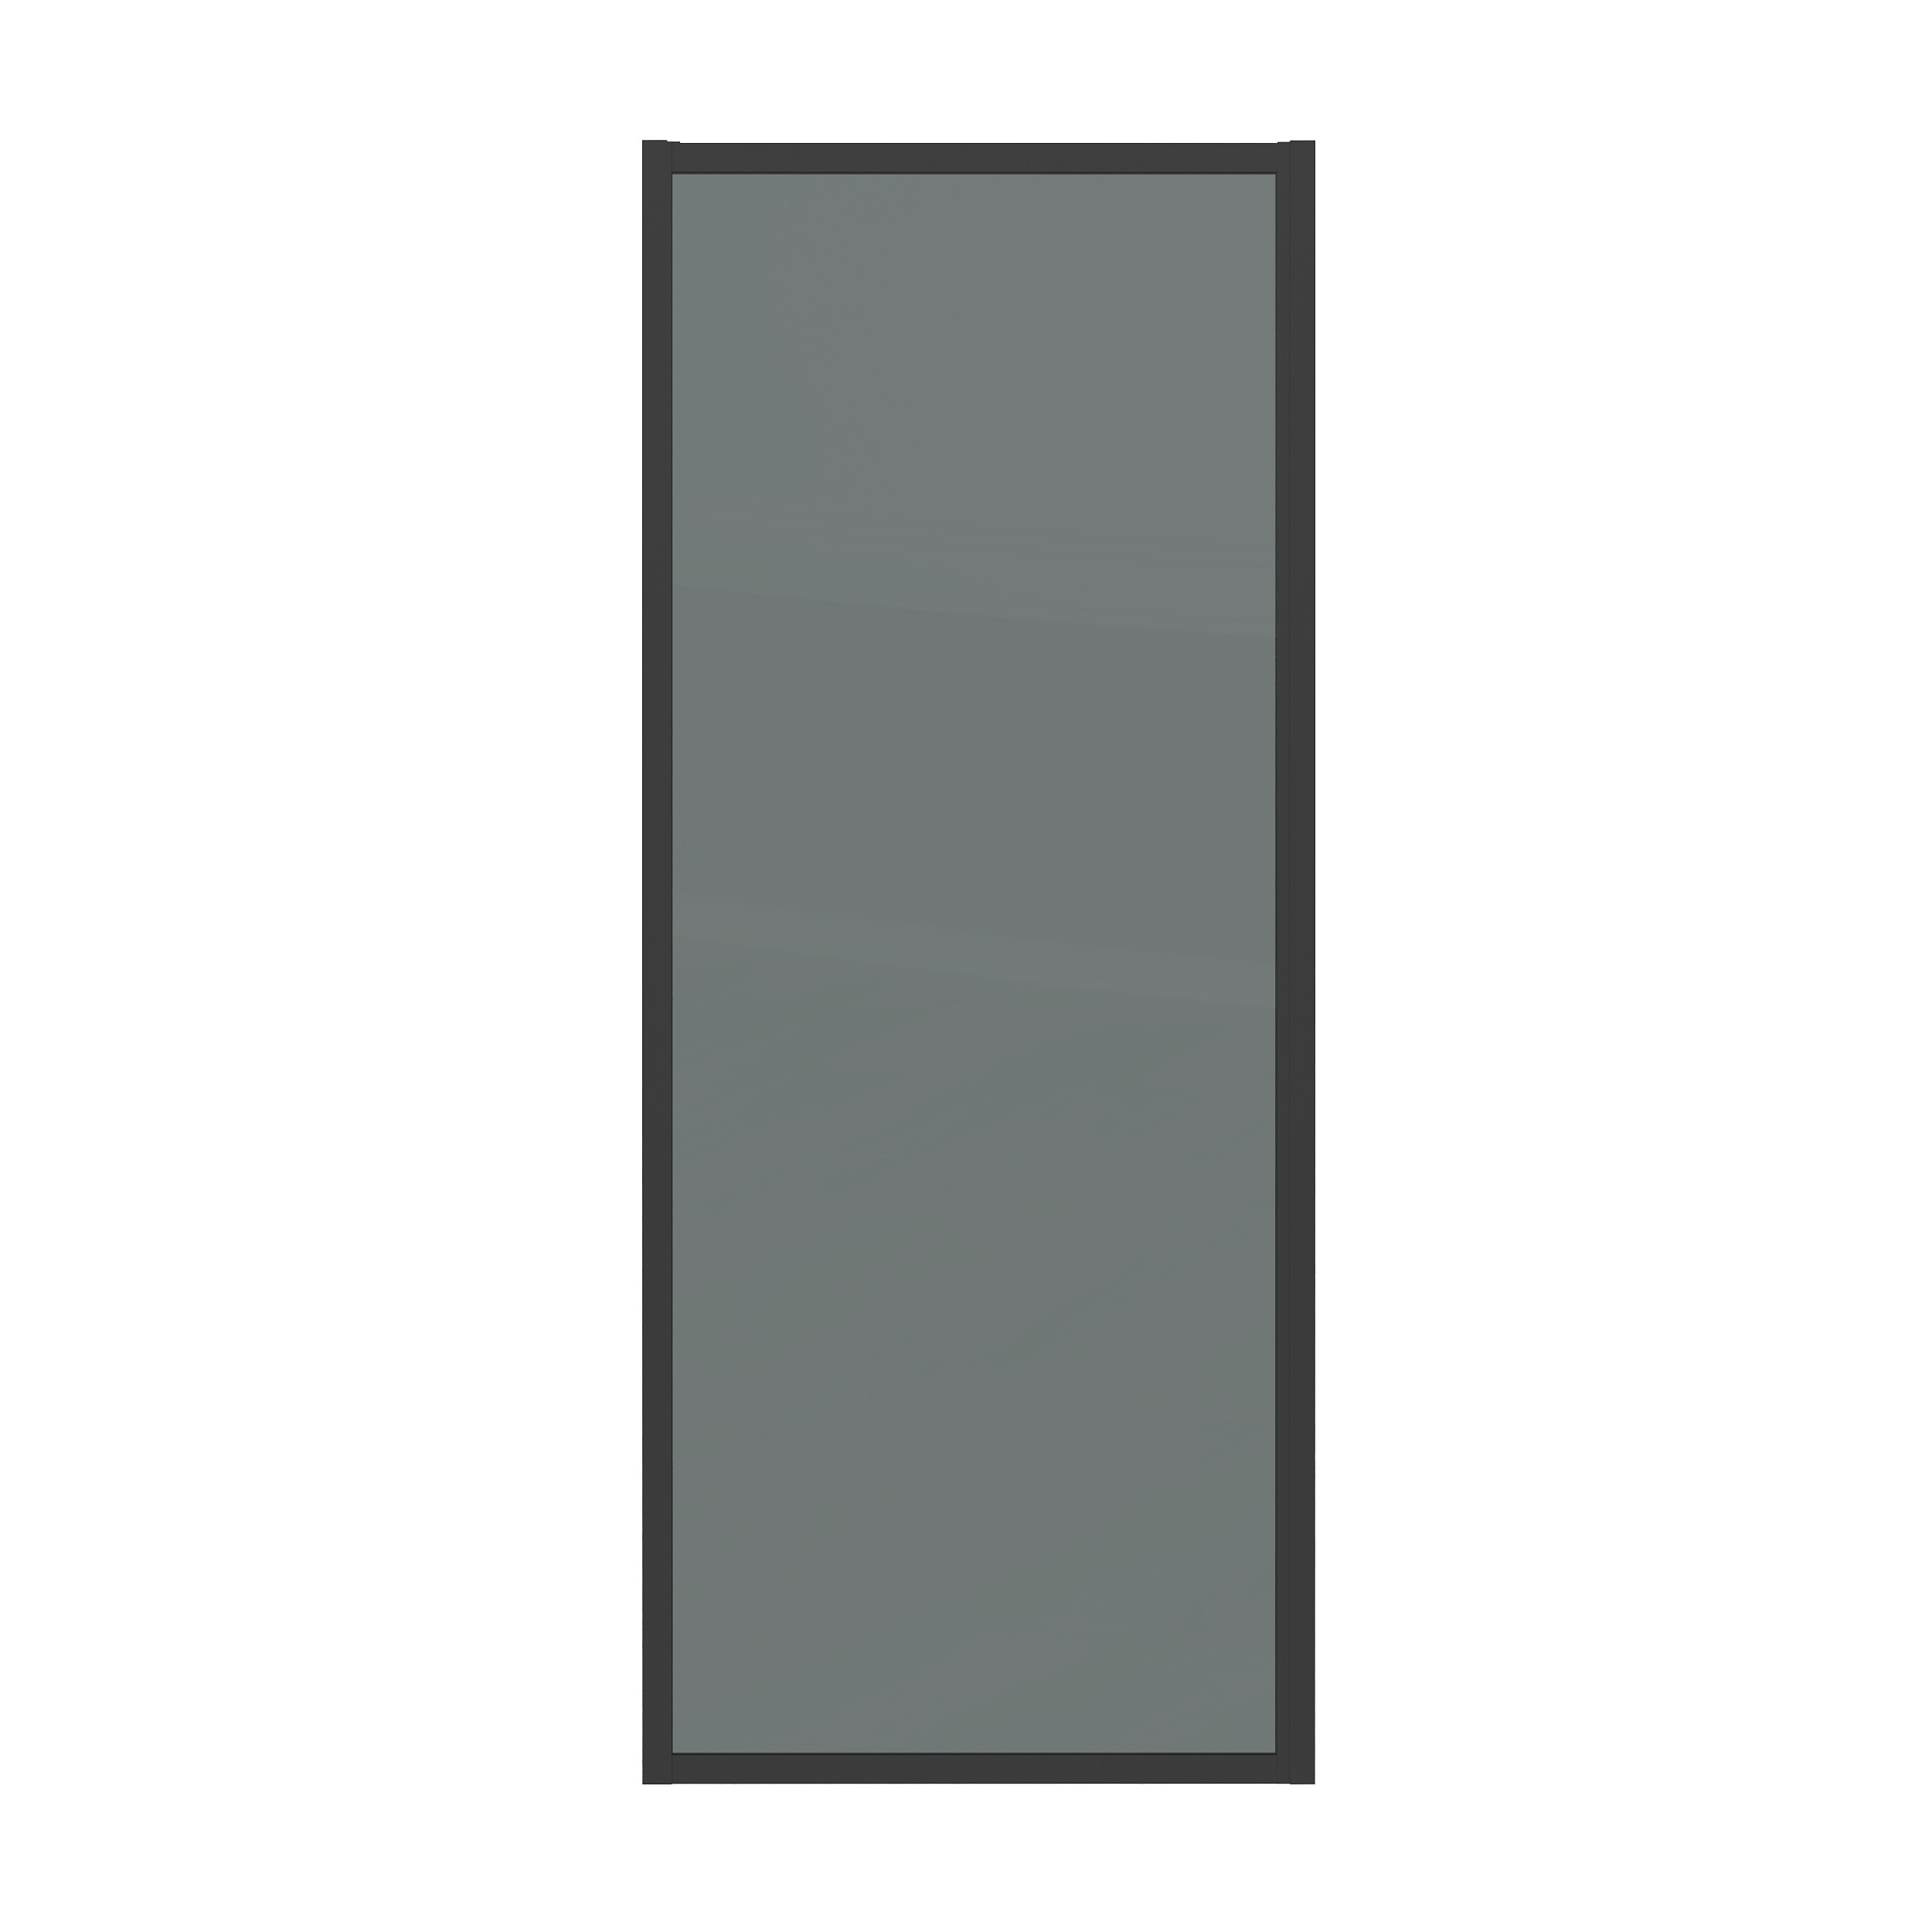 Боковая стенка Grossman Cosmo 70x195 200.K33.02.70.21.10 стекло тонированное, профиль черный матовый - фото 1